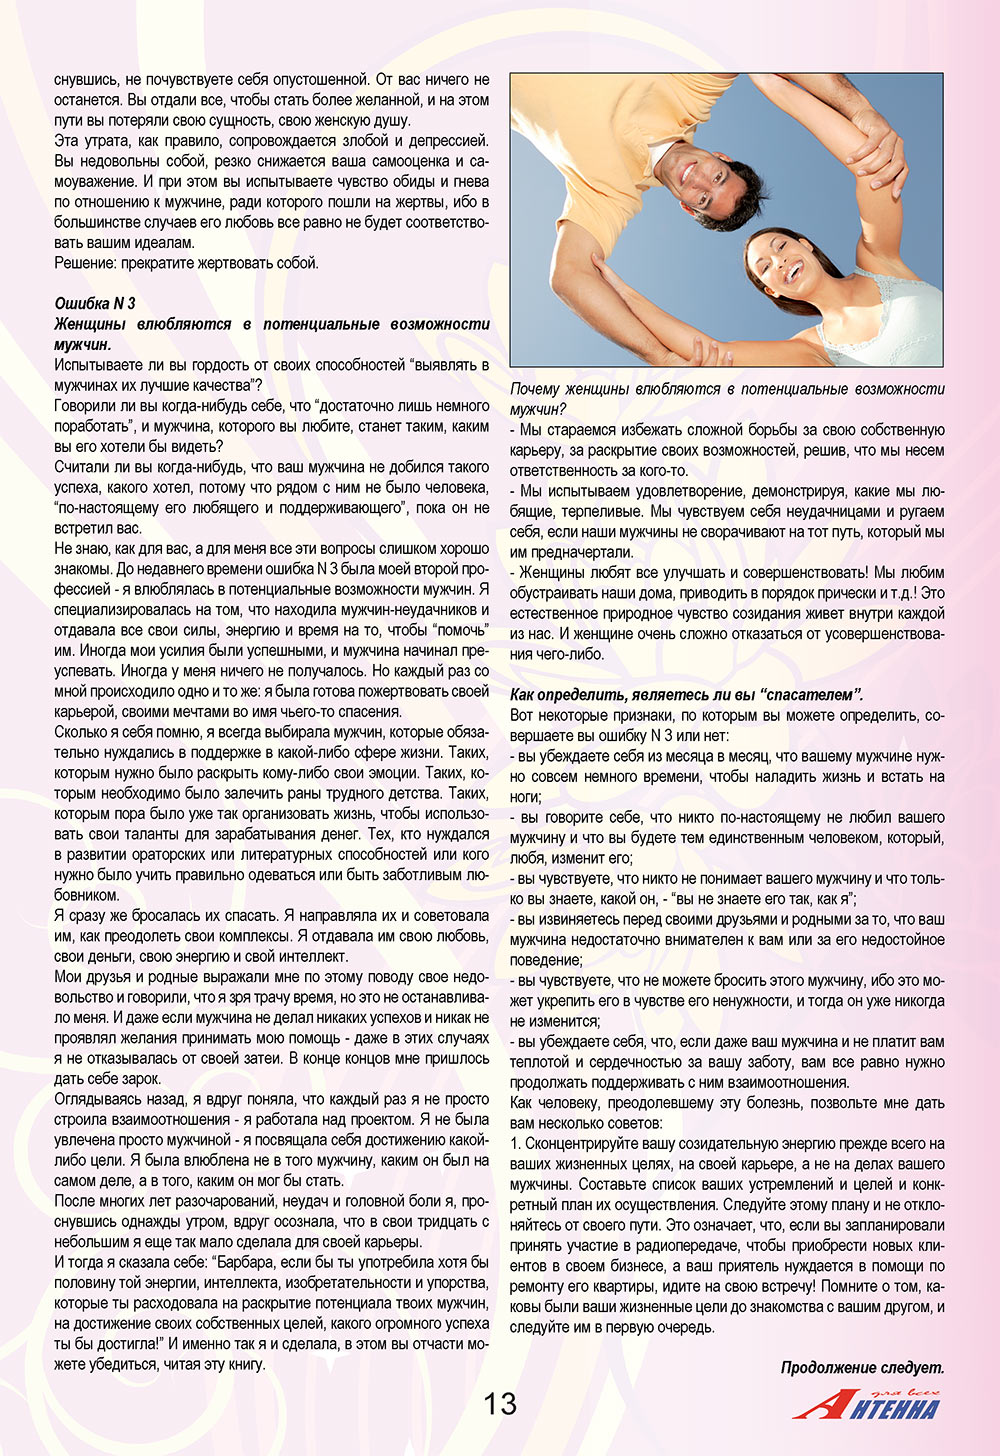 Антенна, журнал. 2008 №12 стр.13